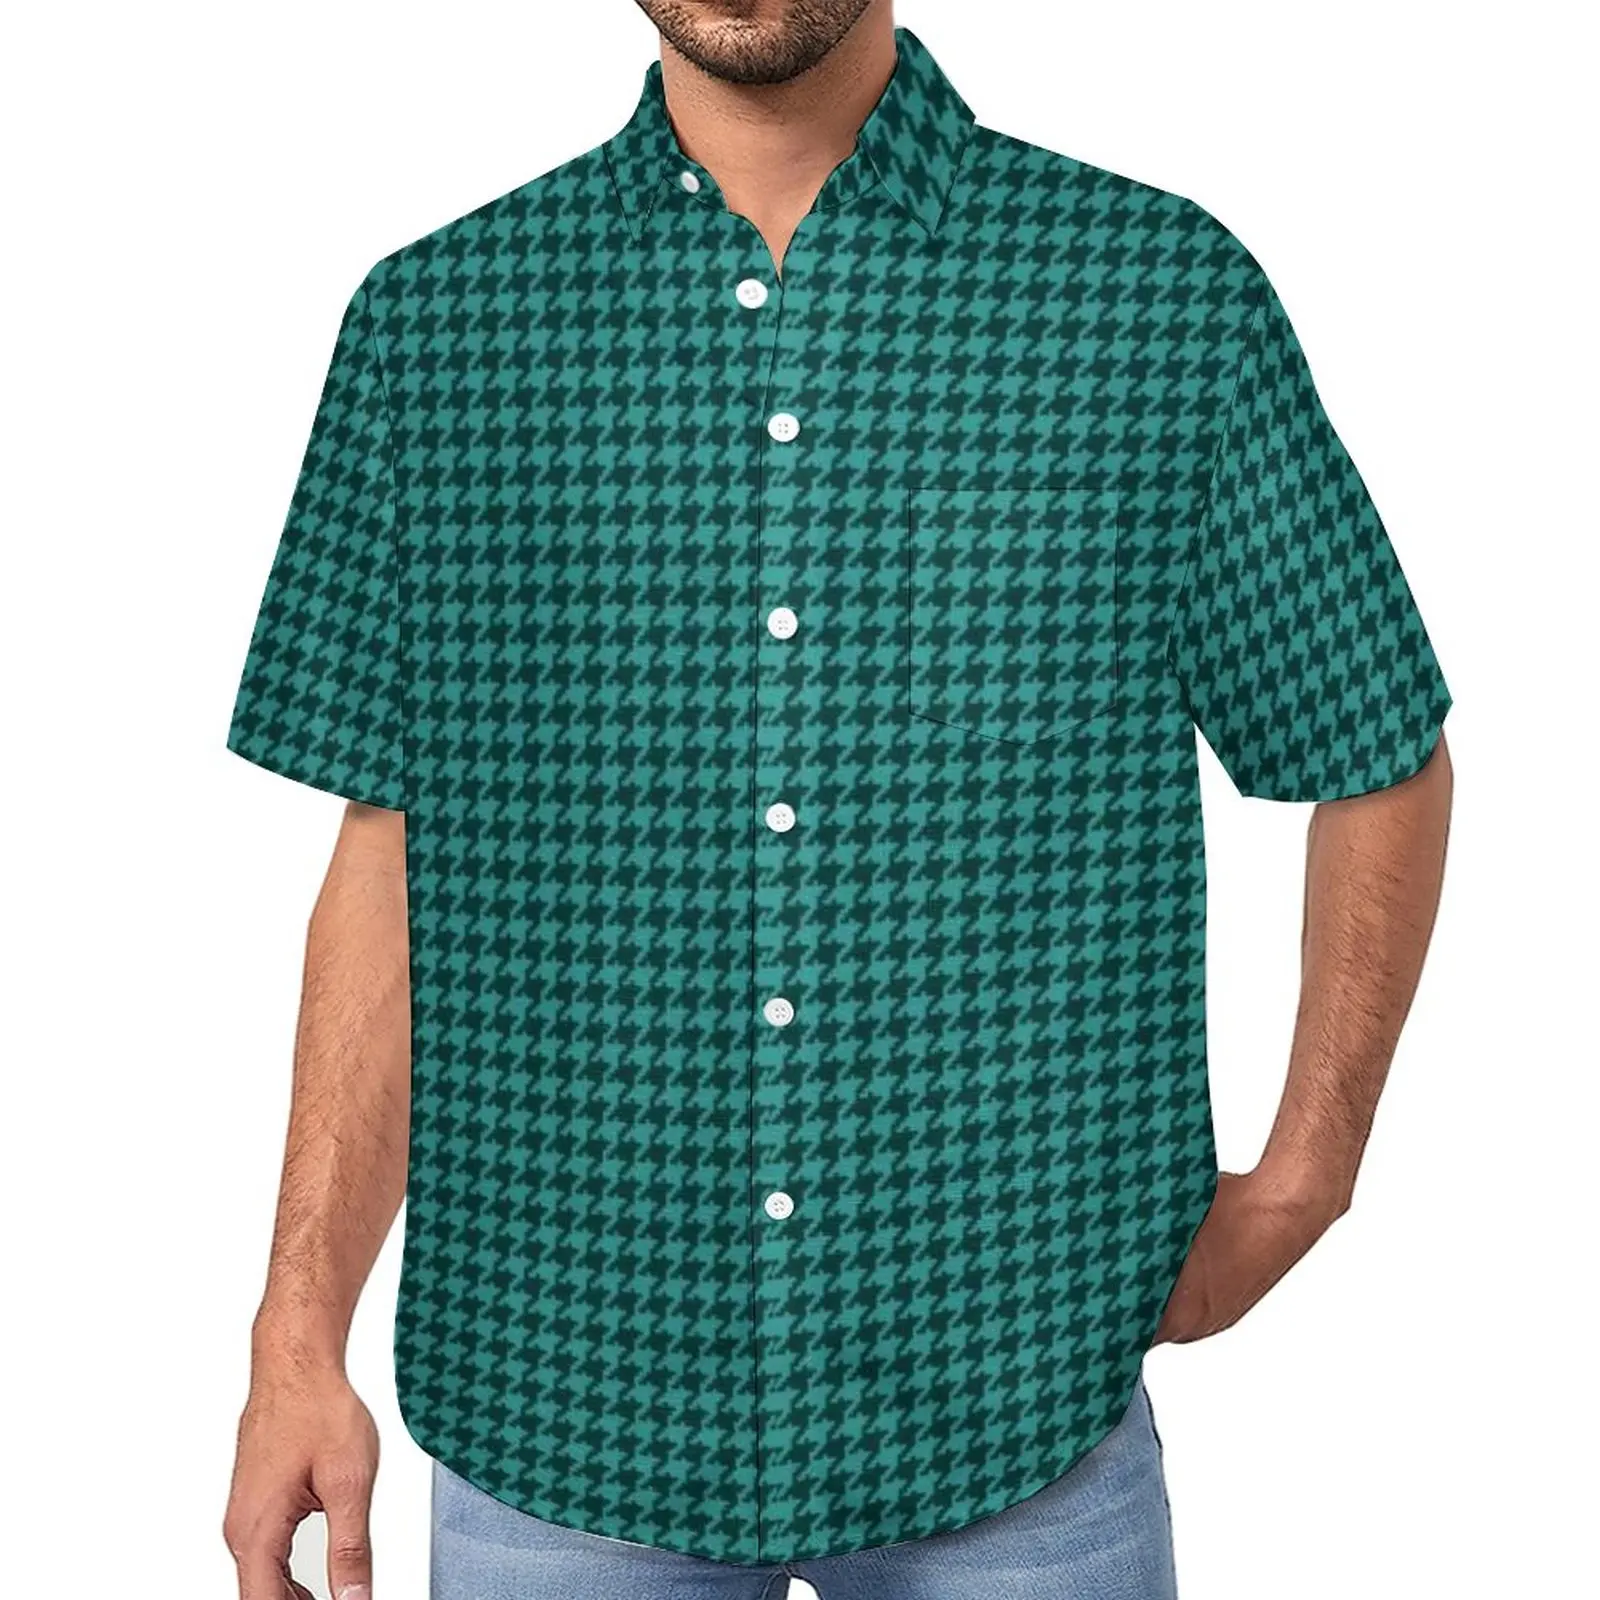 

Зеленая, черная пляжная рубашка с рисунком «гусиные лапки», модные Гавайские повседневные рубашки с маленьким рисунком, мужские винтажные блузки, дизайнерская одежда с коротким рукавом